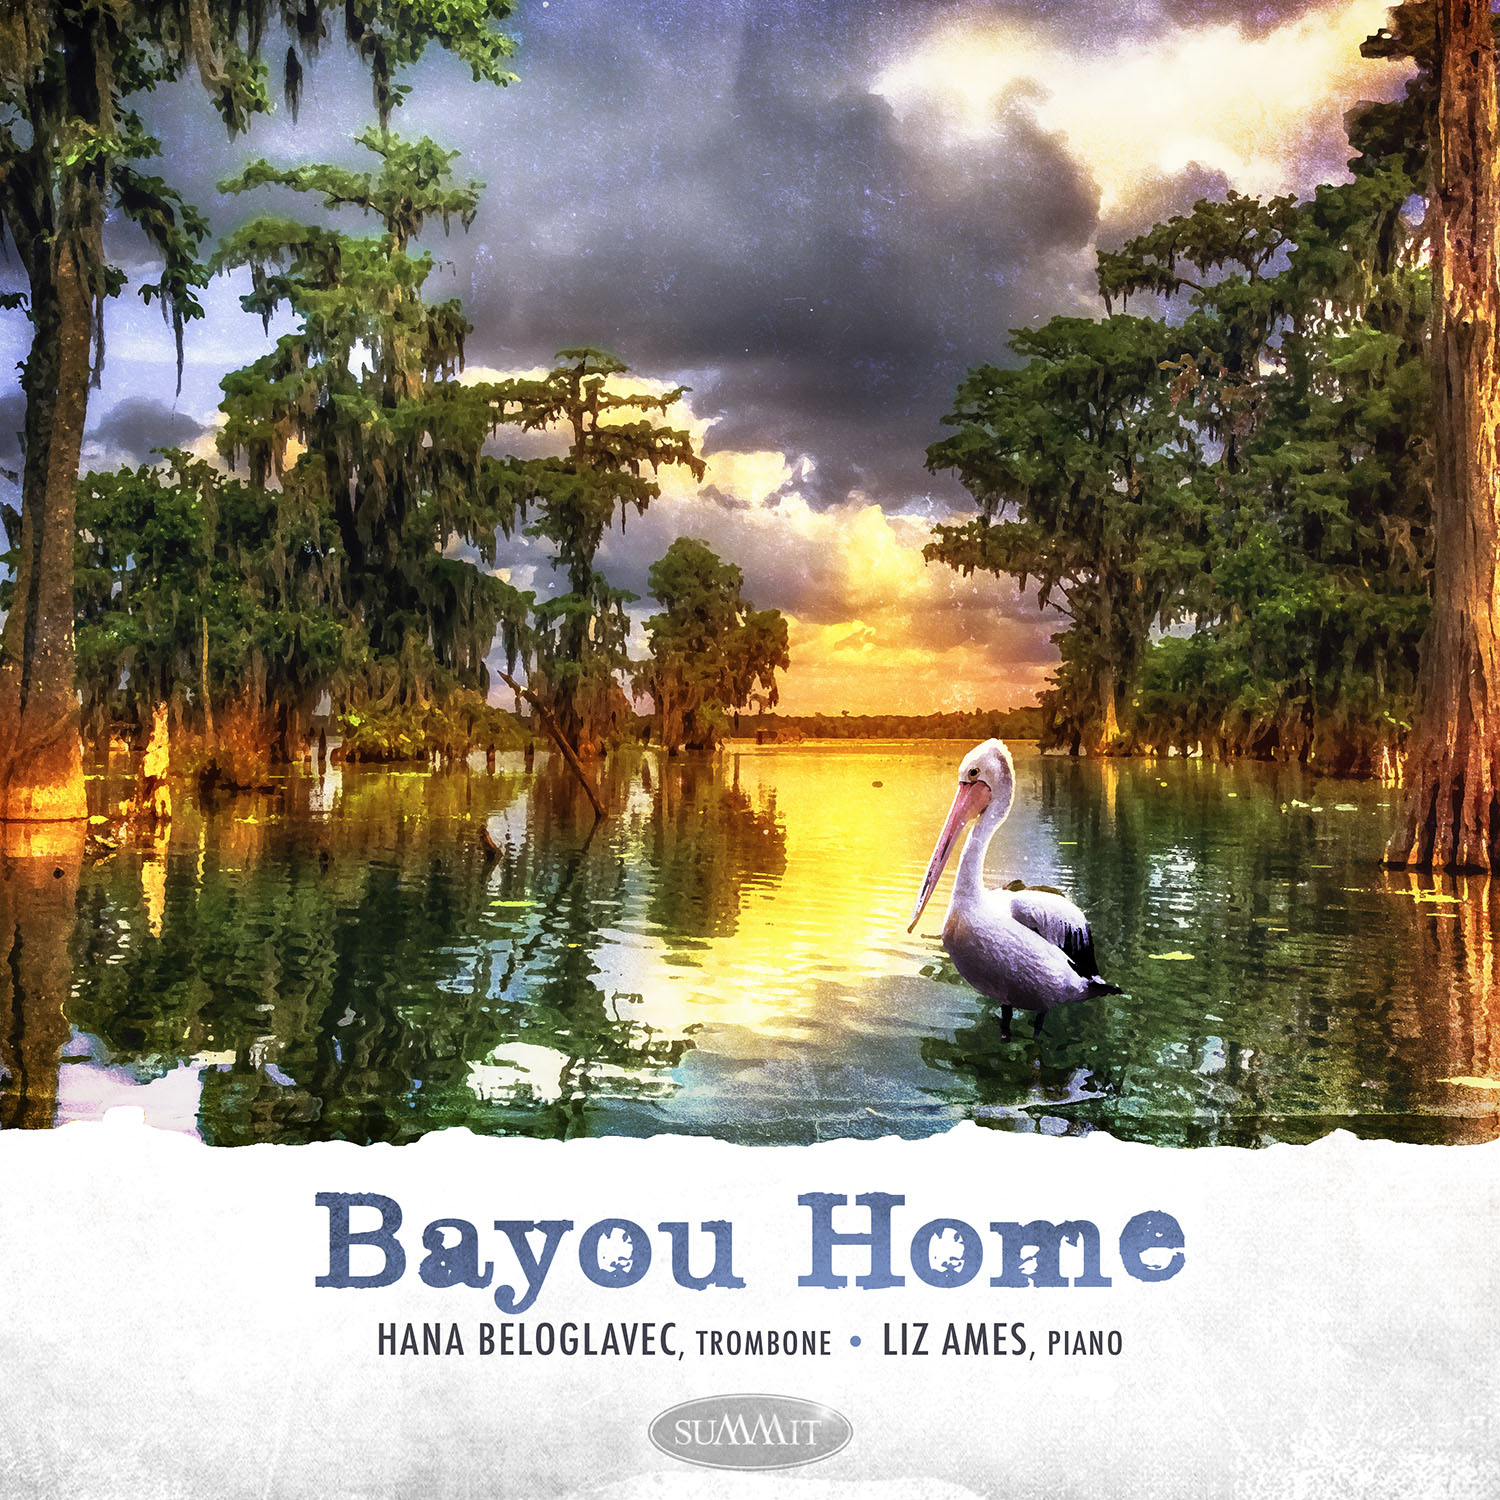 cover artwork for bayou home album